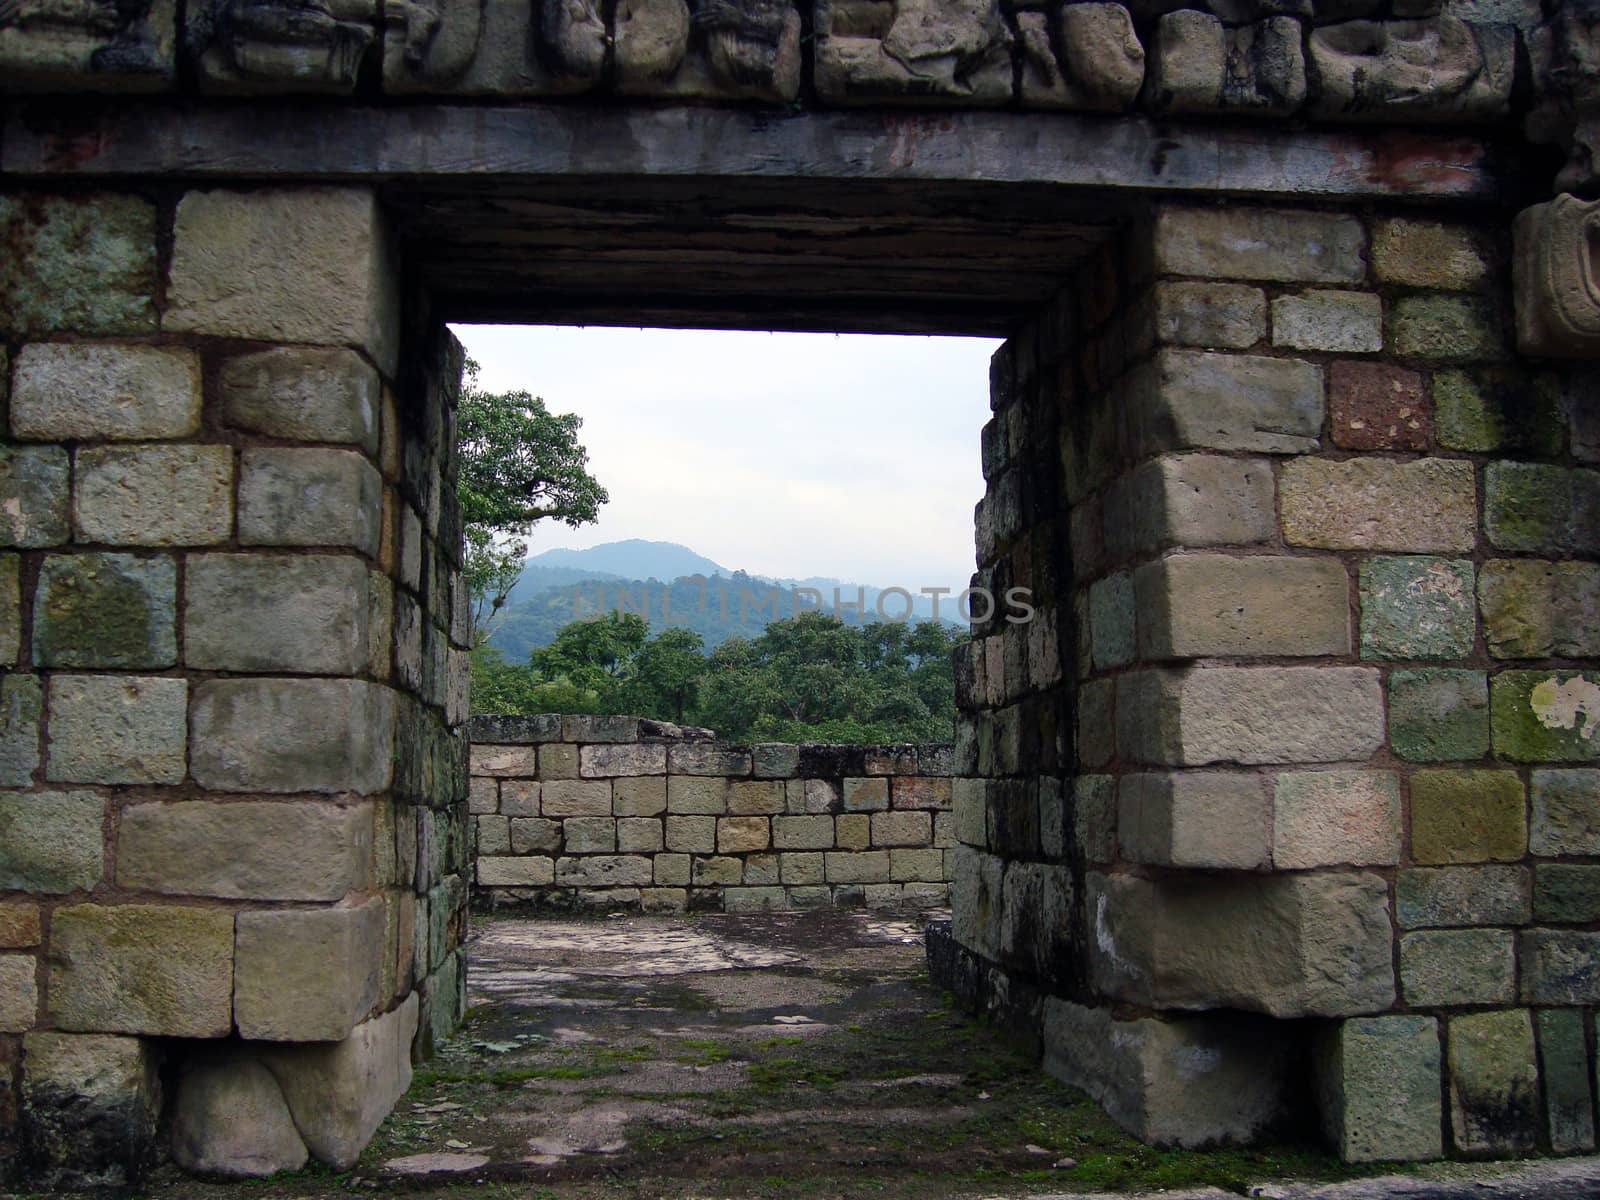 landscape of mayan ruins in copan ruinas, honduras by ftlaudgirl